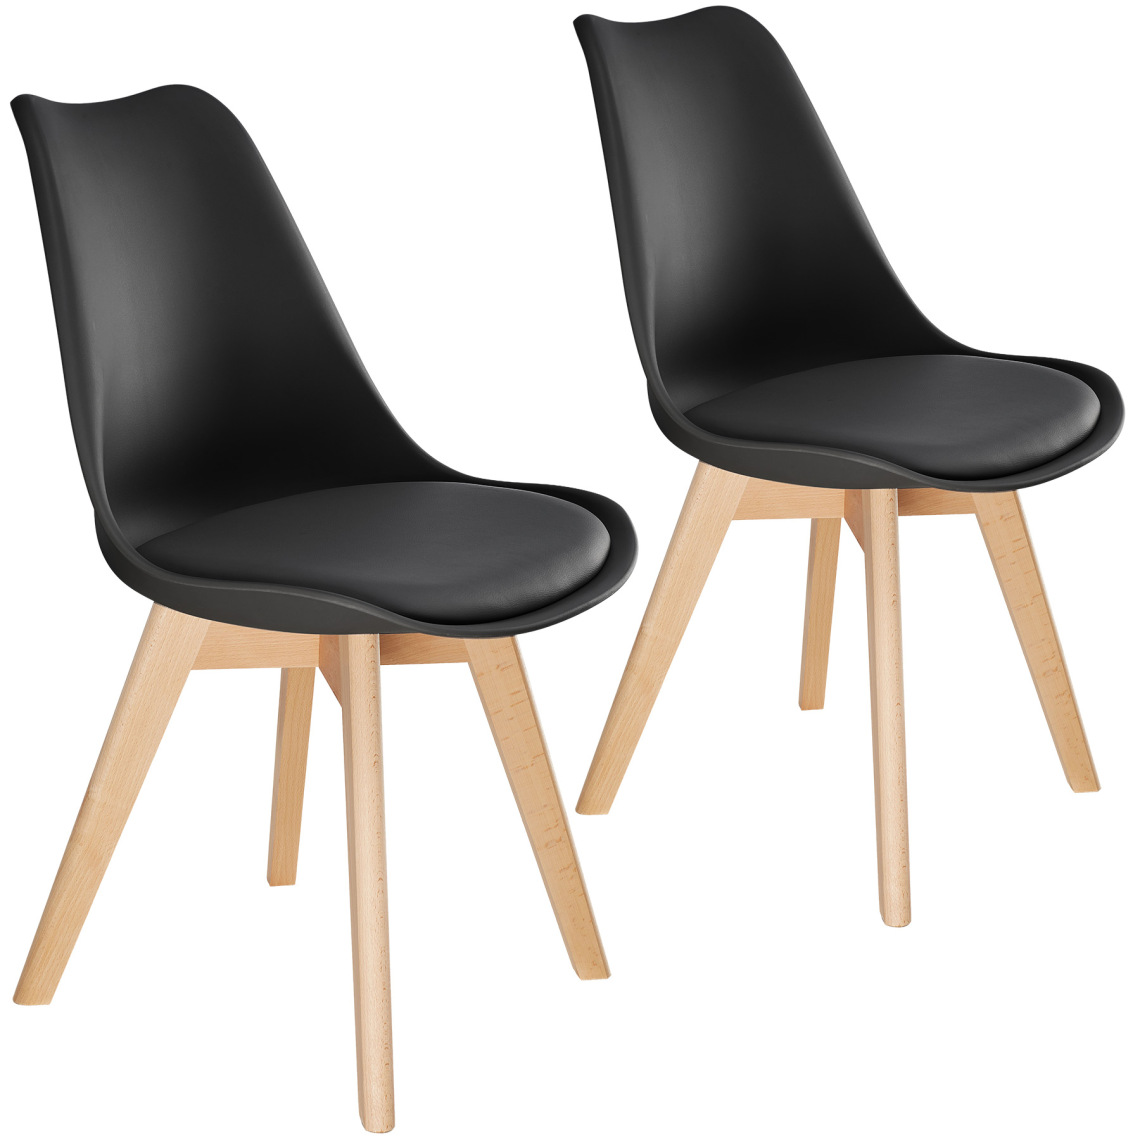 Tectake - 2 Chaises de Salle à Manger FRÉDÉRIQUE Style Scandinave Pieds en Bois Massif Design Moderne - noir - Chaises